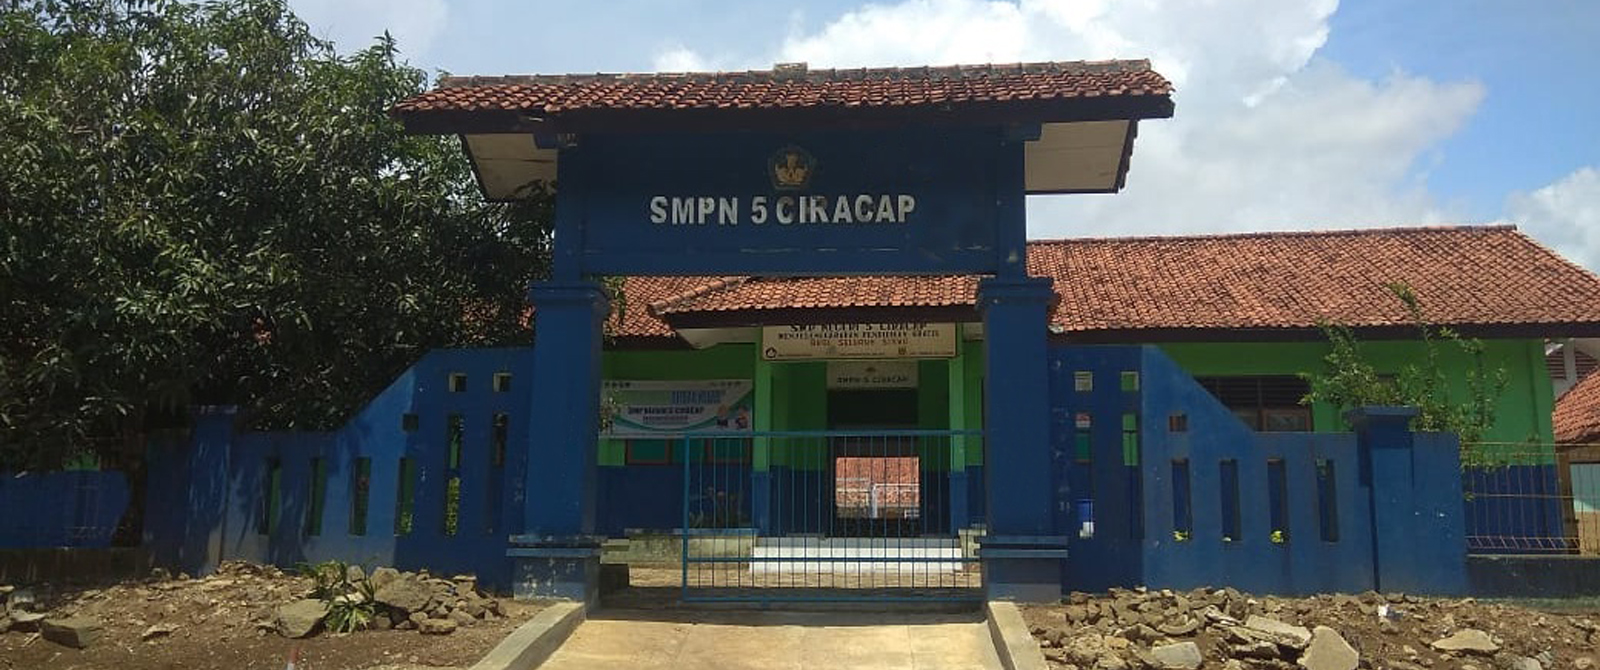 SMPN 5 Ciracap